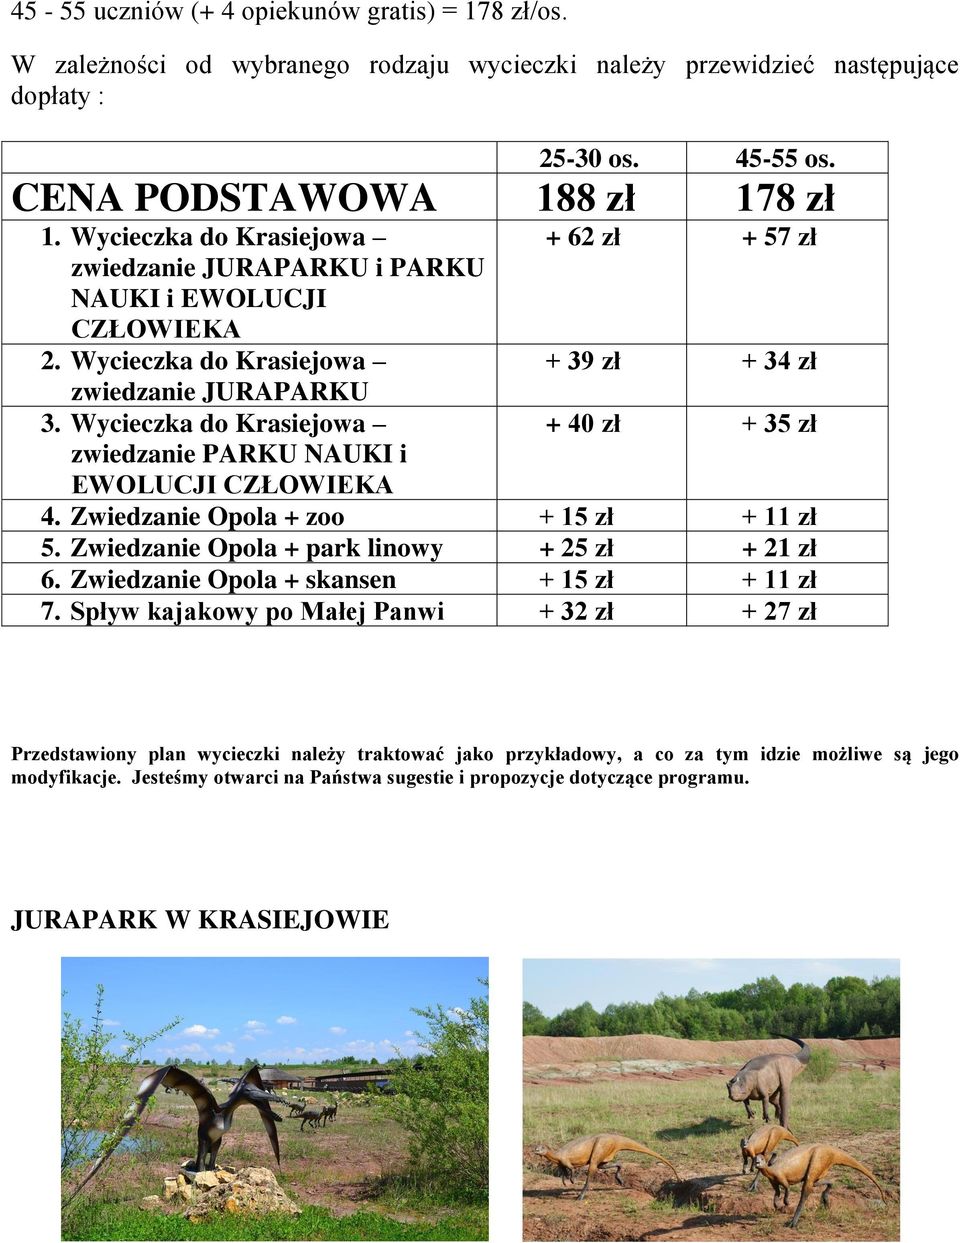 Wycieczka do Krasiejowa + 40 zł + 35 zł zwiedzanie PARKU NAUKI i EWOLUCJI CZŁOWIEKA 4. Zwiedzanie Opola + zoo + 15 zł + 11 zł 5. Zwiedzanie Opola + park linowy + 25 zł + 21 zł 6.